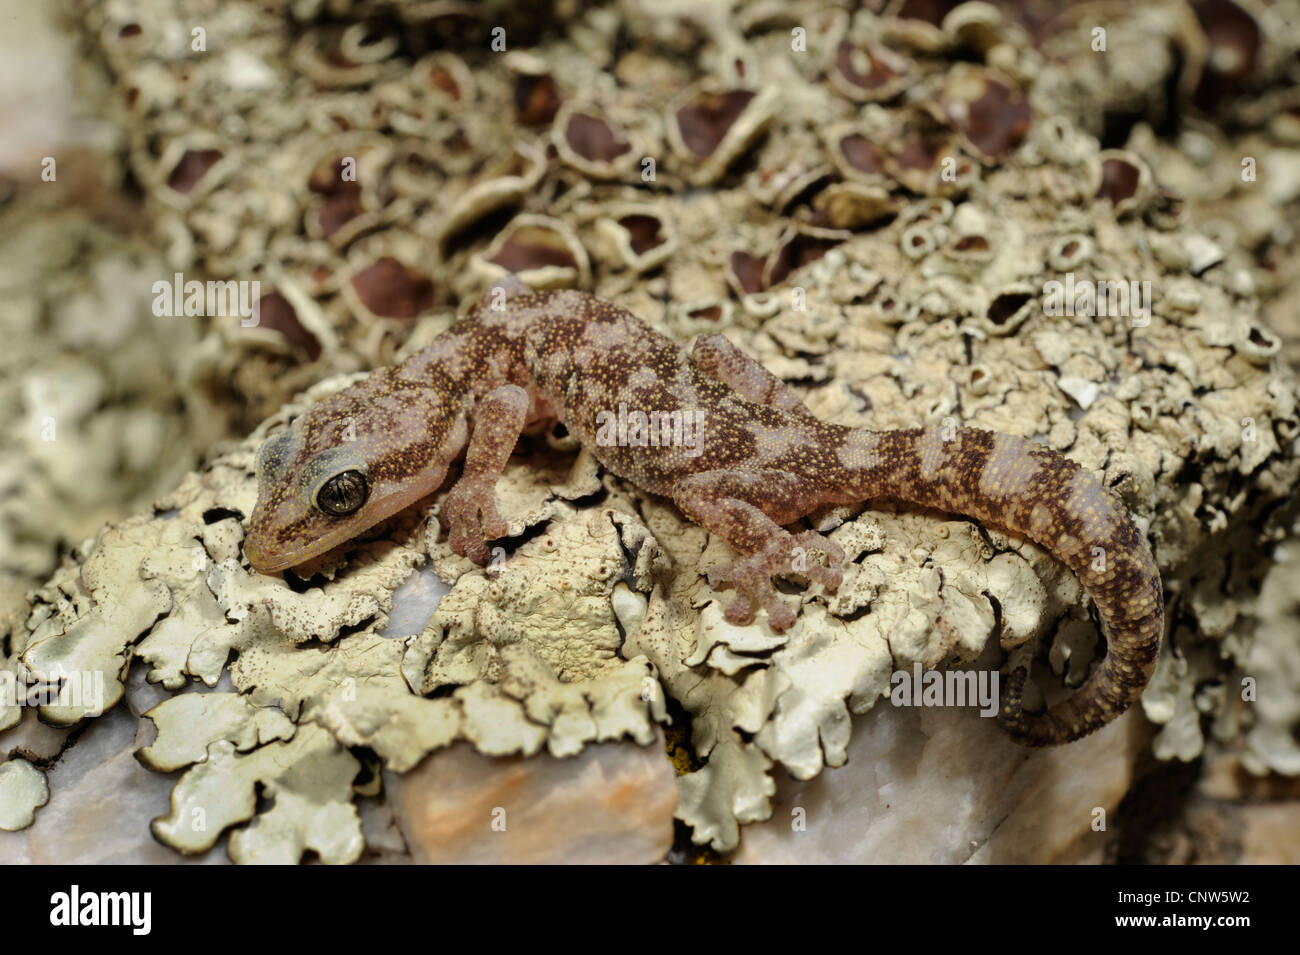 European leaf-toed gecko (Phyllodactylus europaeus, Euleptes europaeus  ), on lichens, Italy, Sardegna Stock Photo